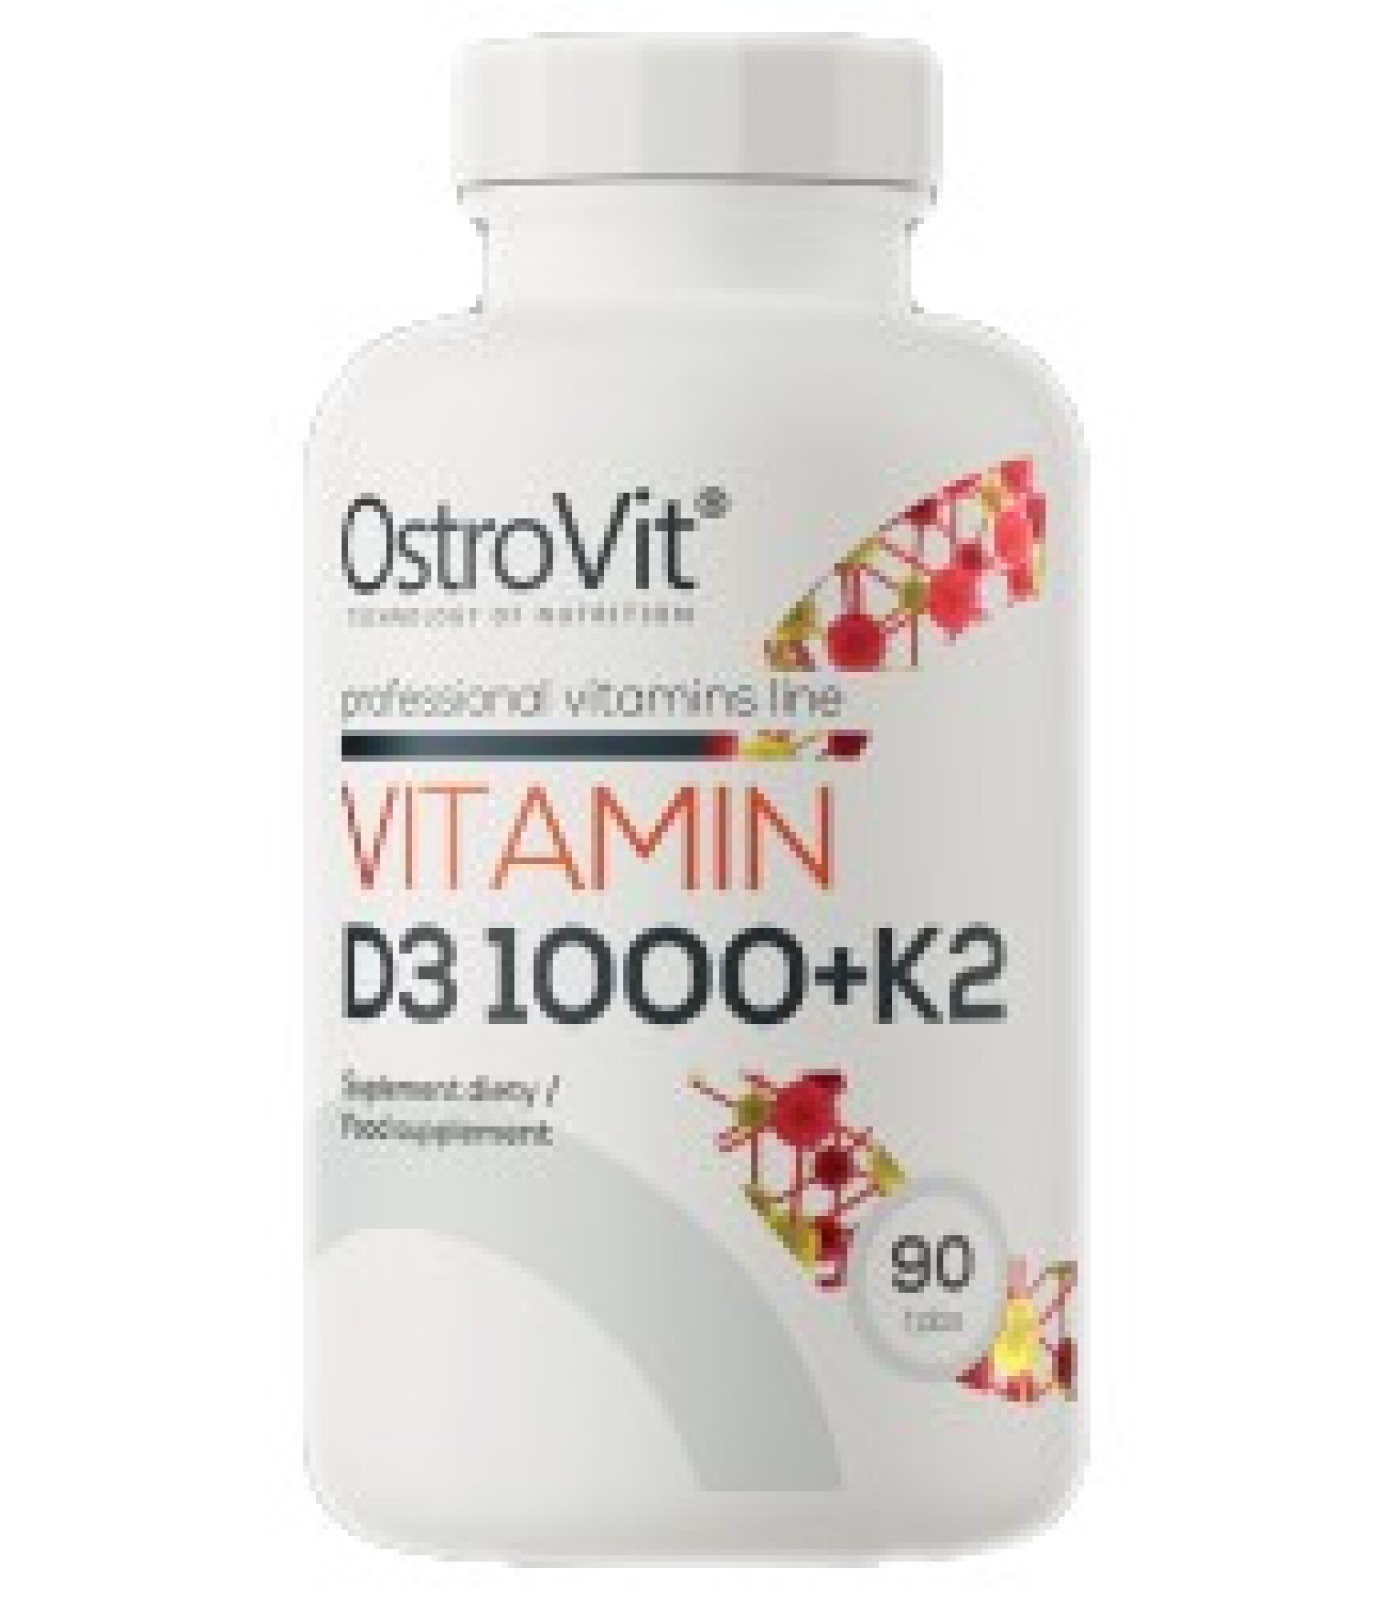 OstroVit - Vitamin D3 1000 IU + K2 50 mcg / 90 Таблетки, 90 дози